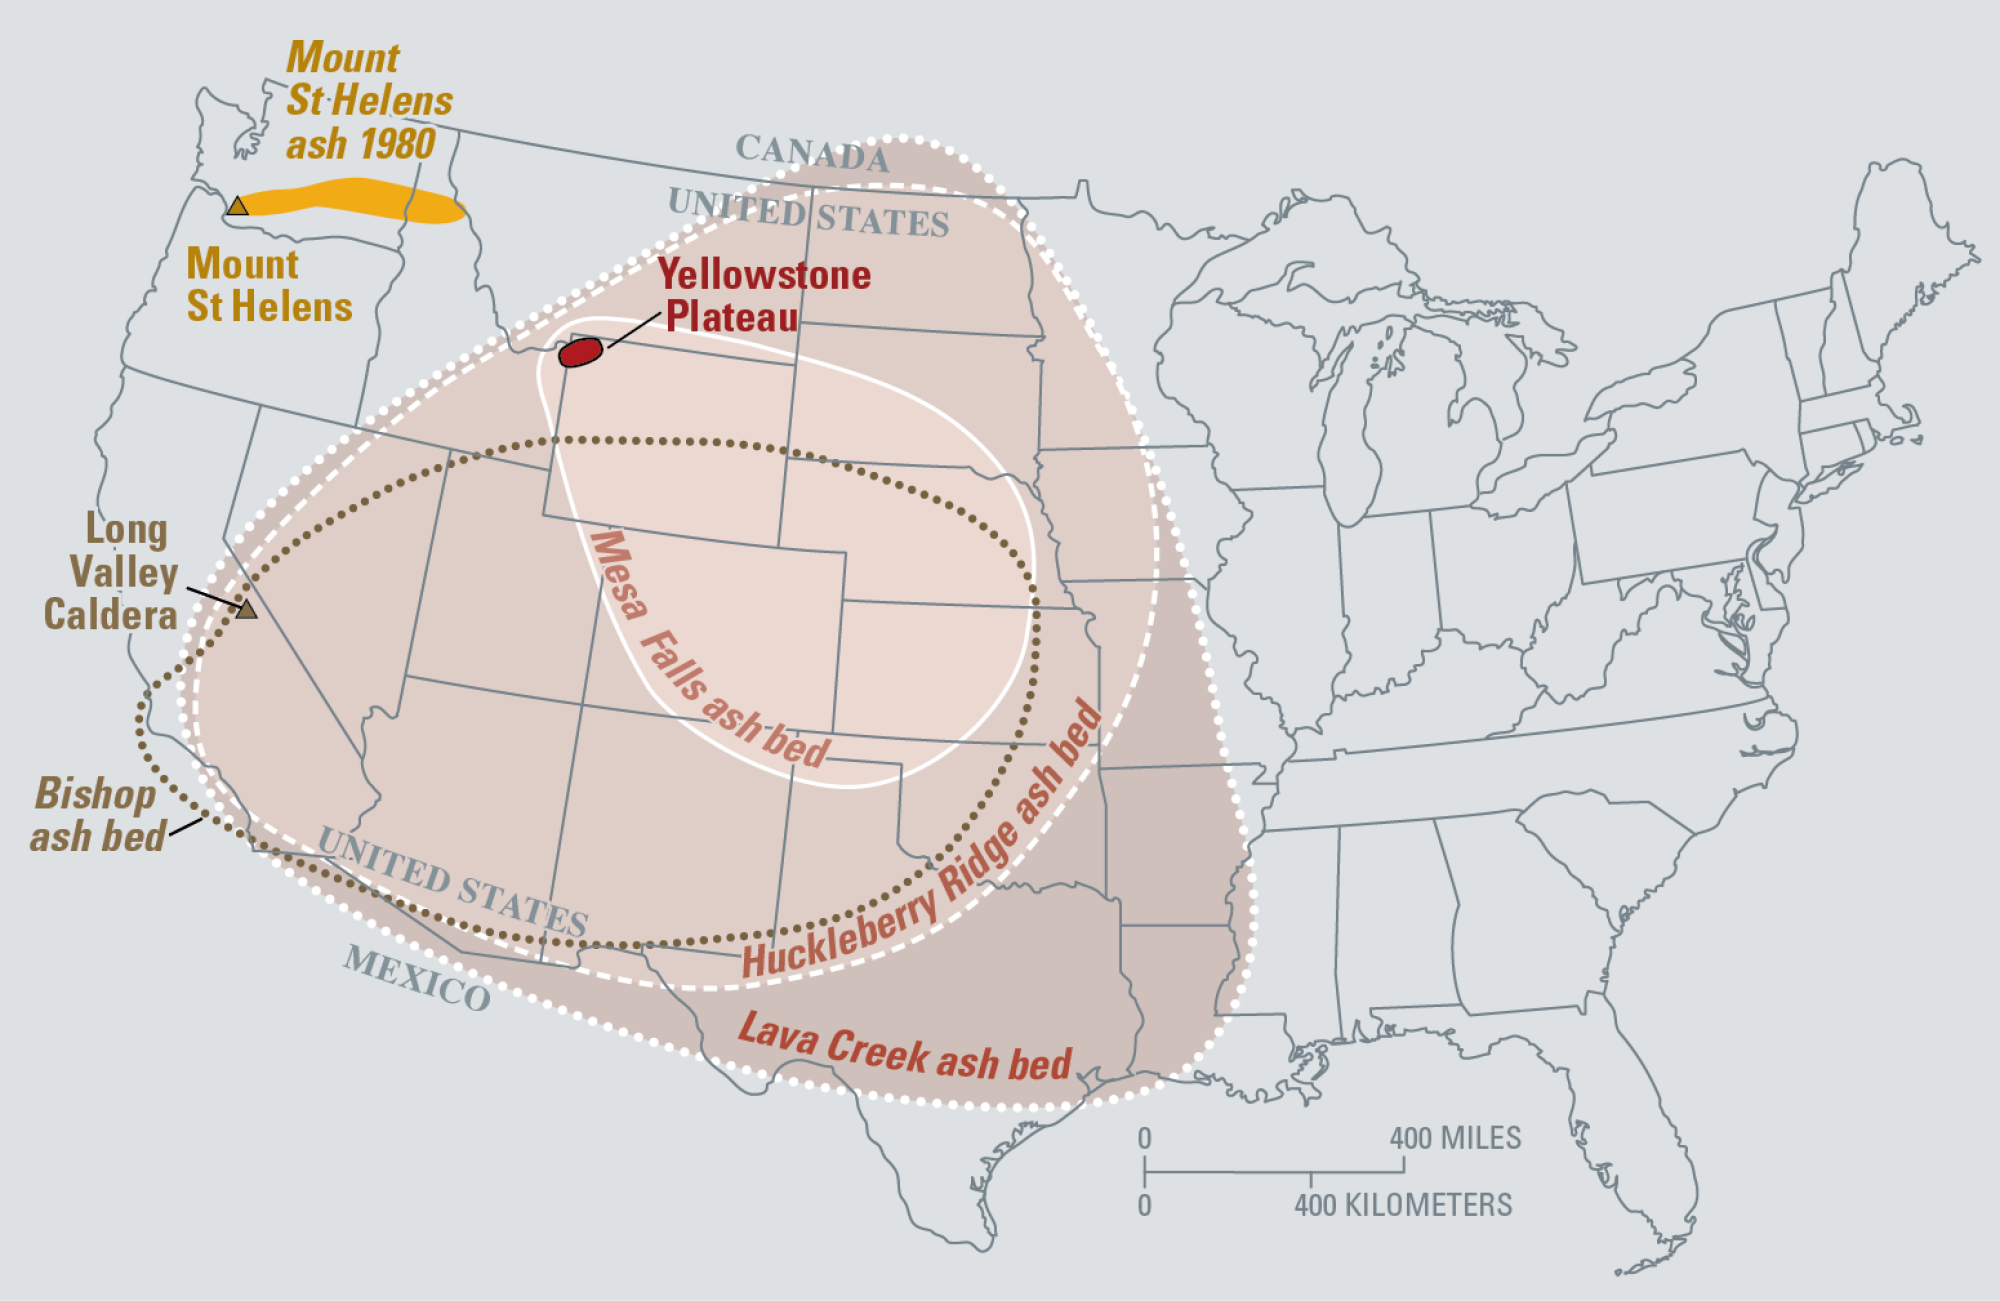 Les deux vastes régions entourées de lignes pointillées montrent où des lits de cendres se sont formés à la suite de deux super-éruptions de la région du plateau de Yellowstone au cours des derniers millions d'années.